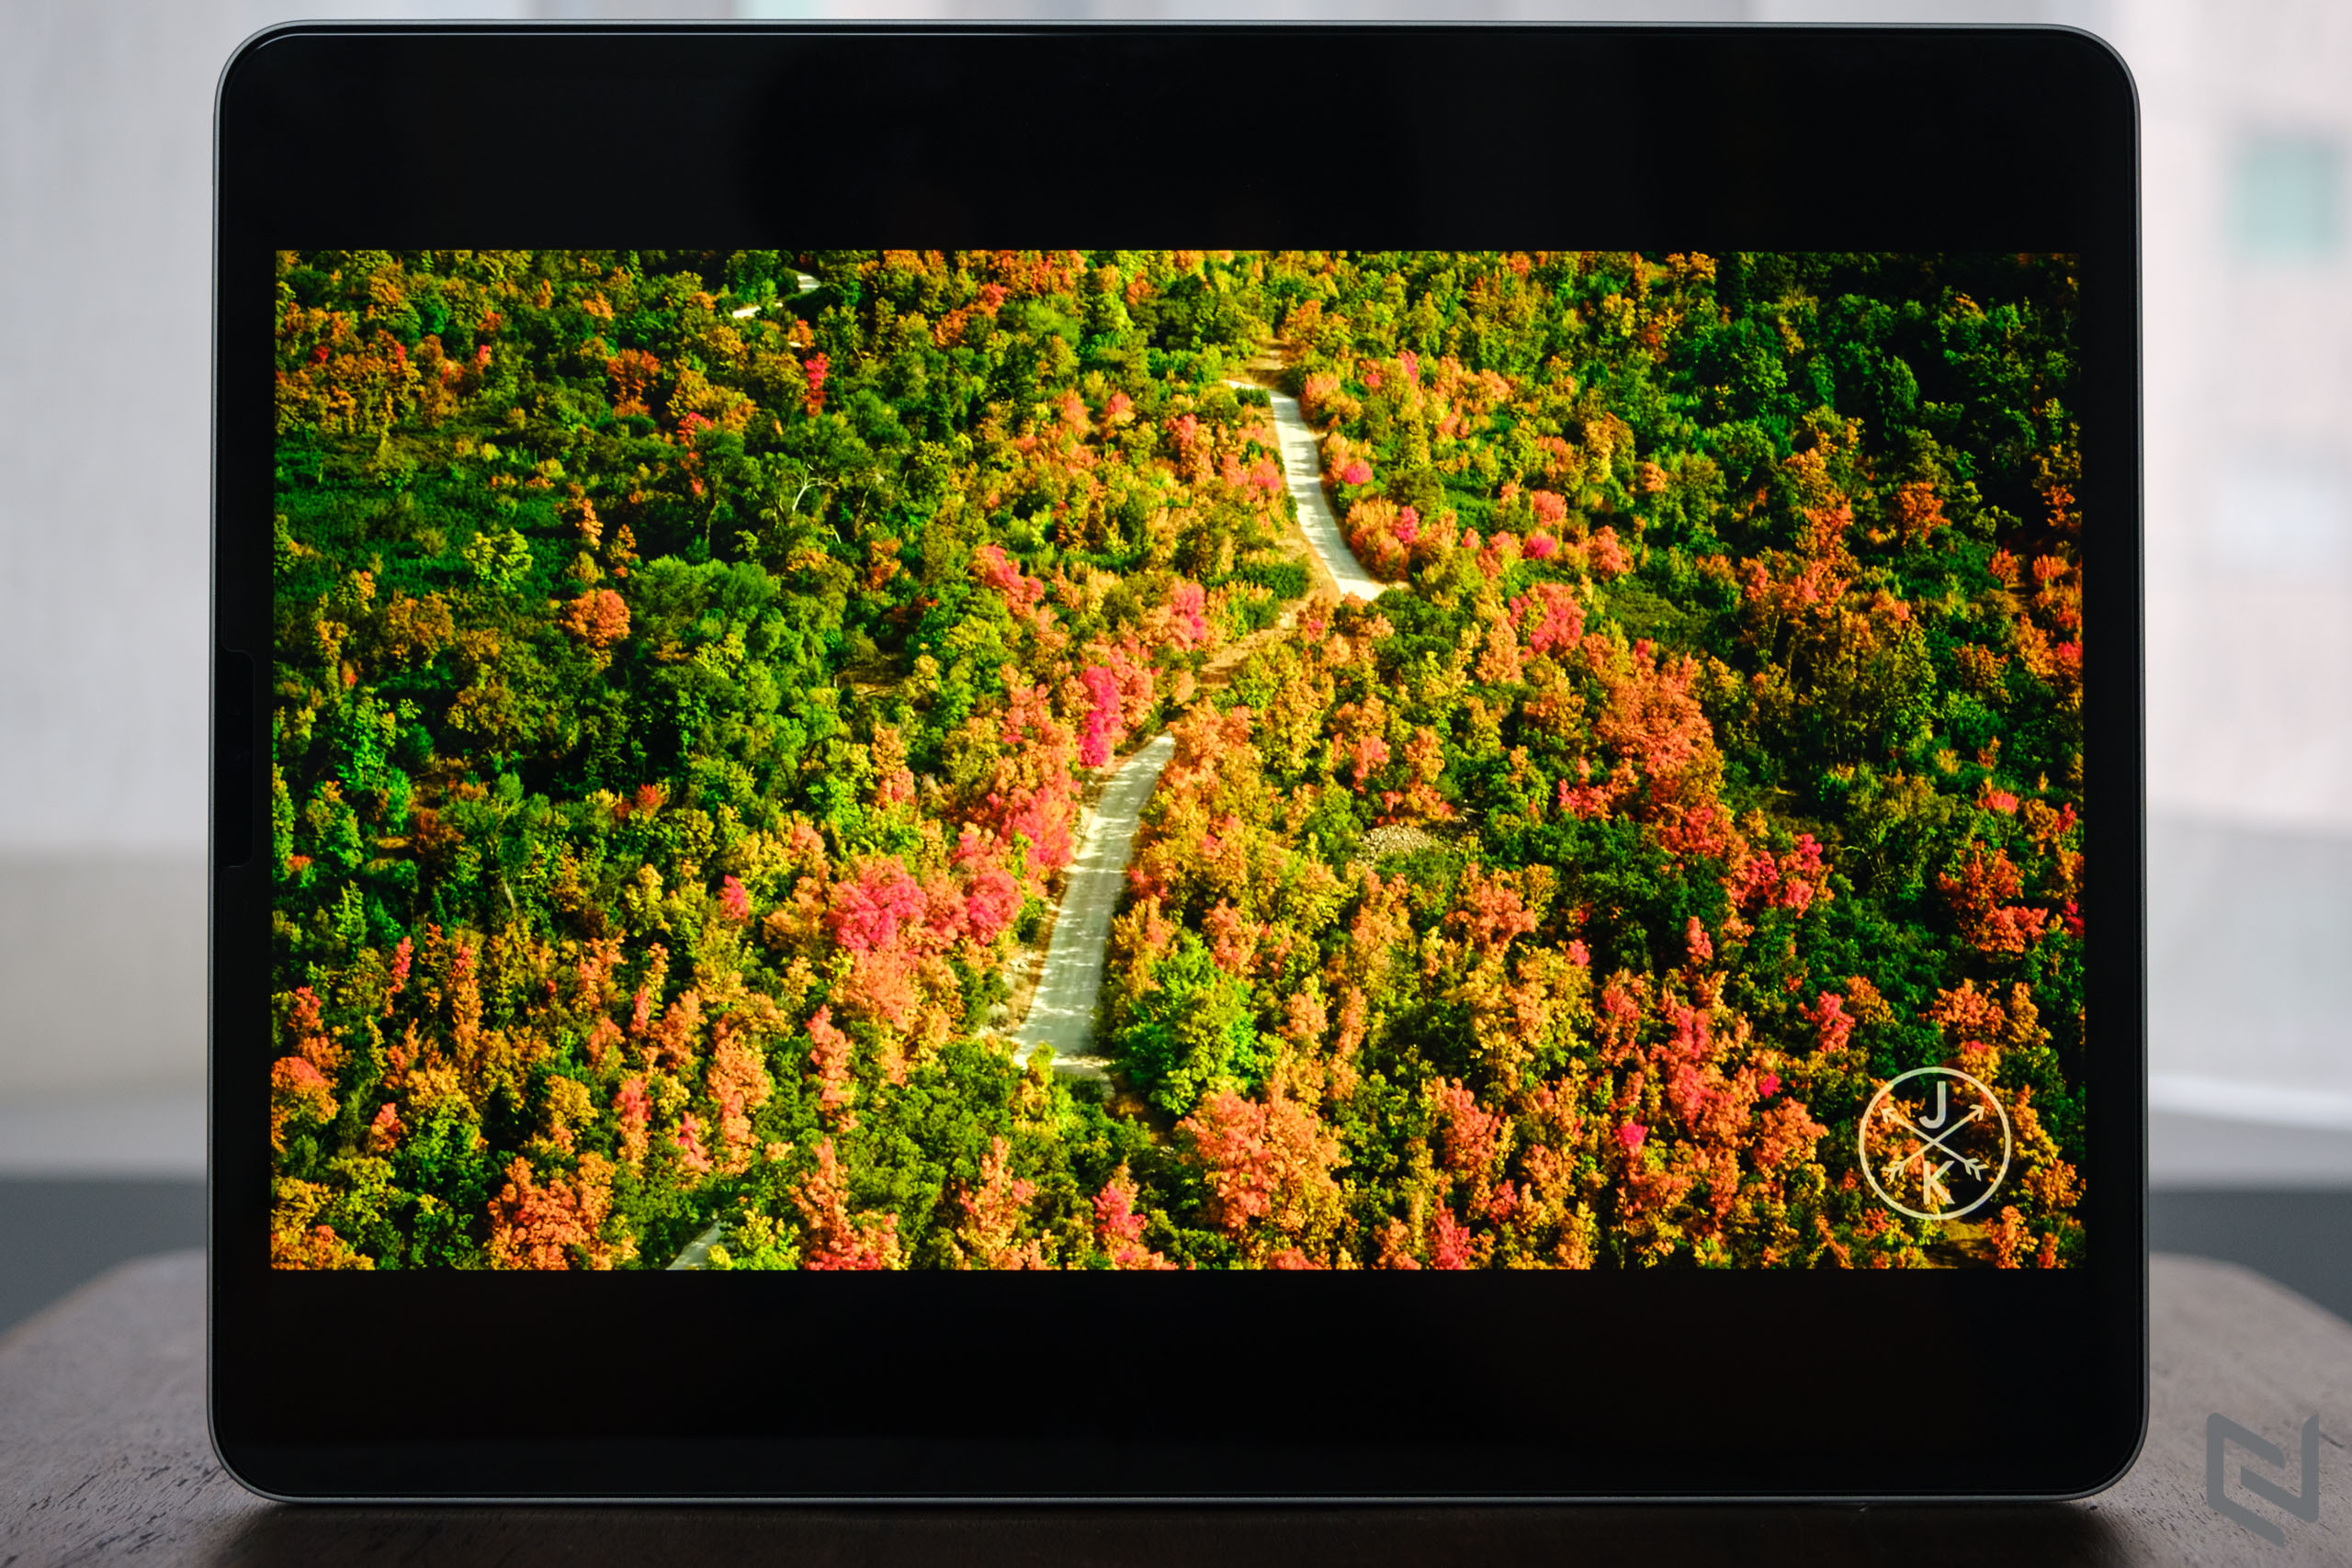 Mở hộp iPad Pro M1 12.9-inch chính hãng FPT Shop: Màn hình siêu đẹp, siêu mạnh mẽ